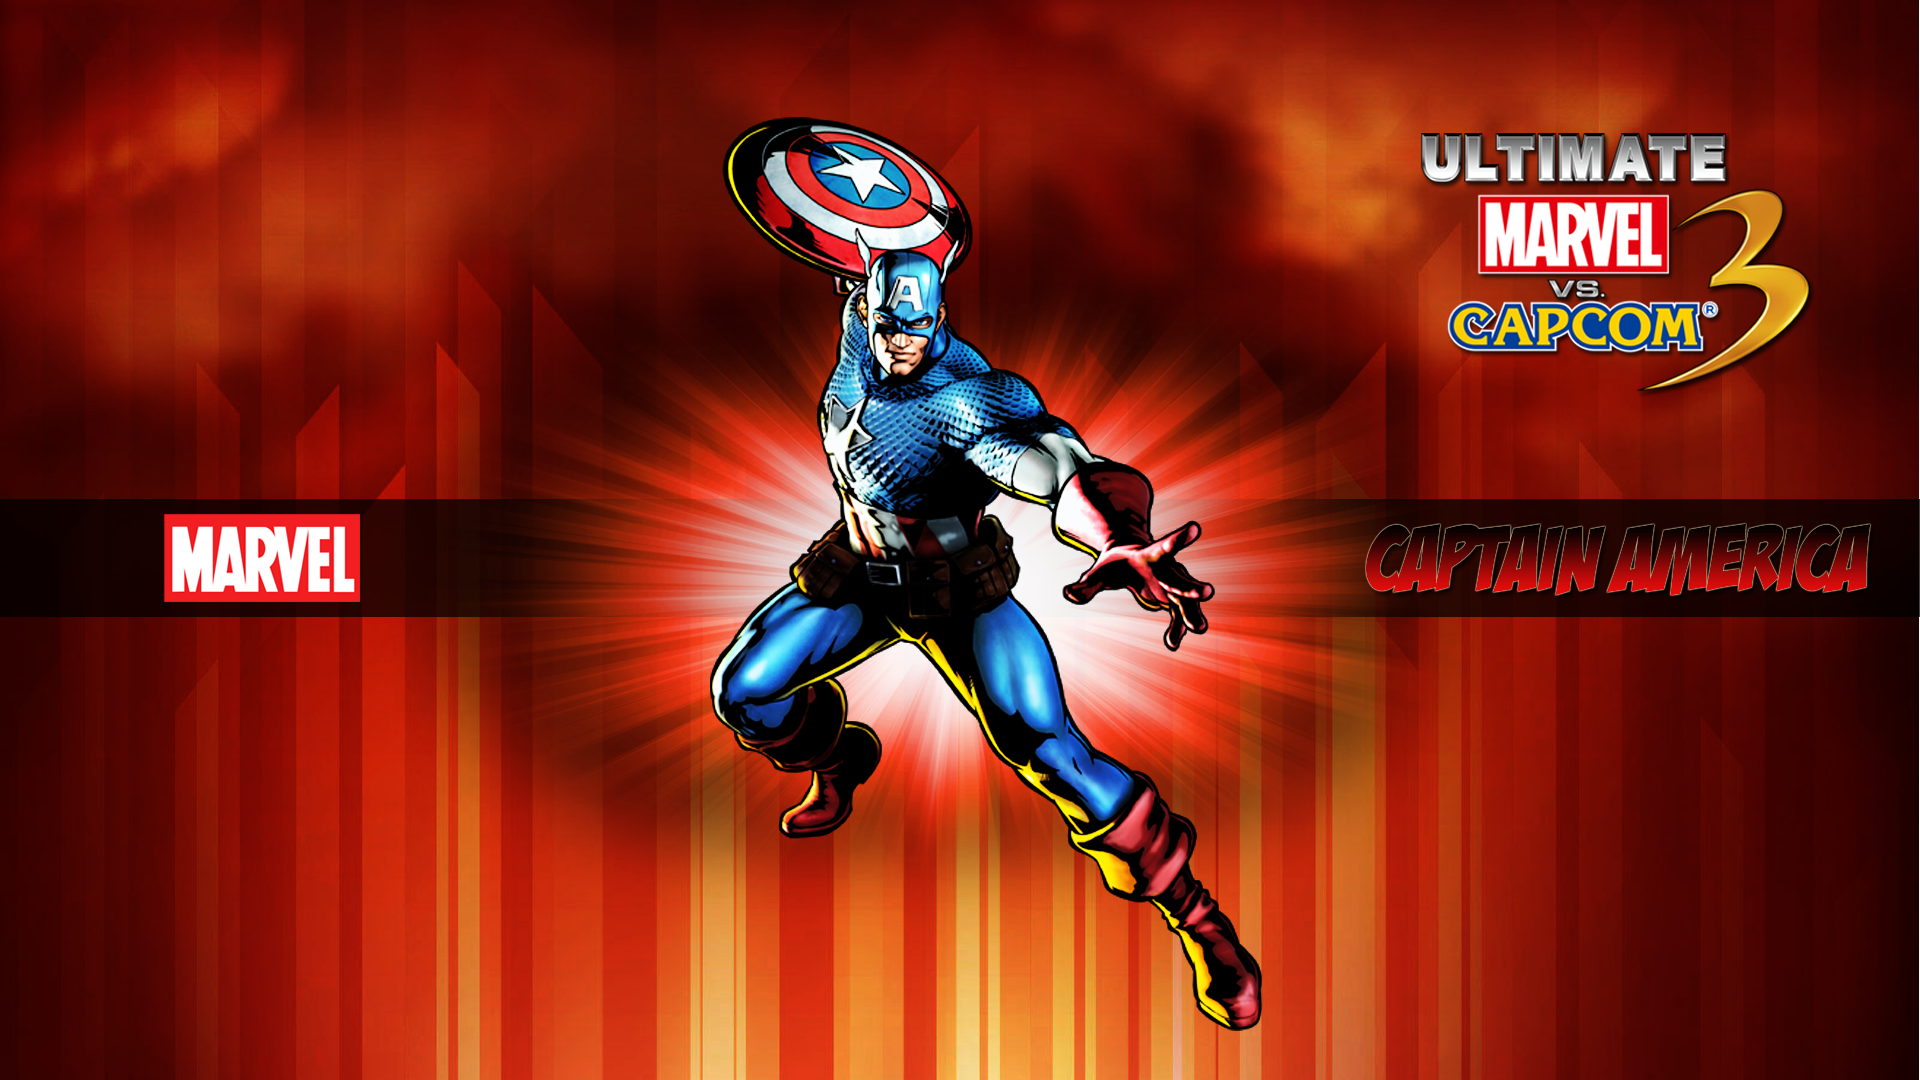 Marvel Vs Capcom 3 Captain America Video Games 1920x1080